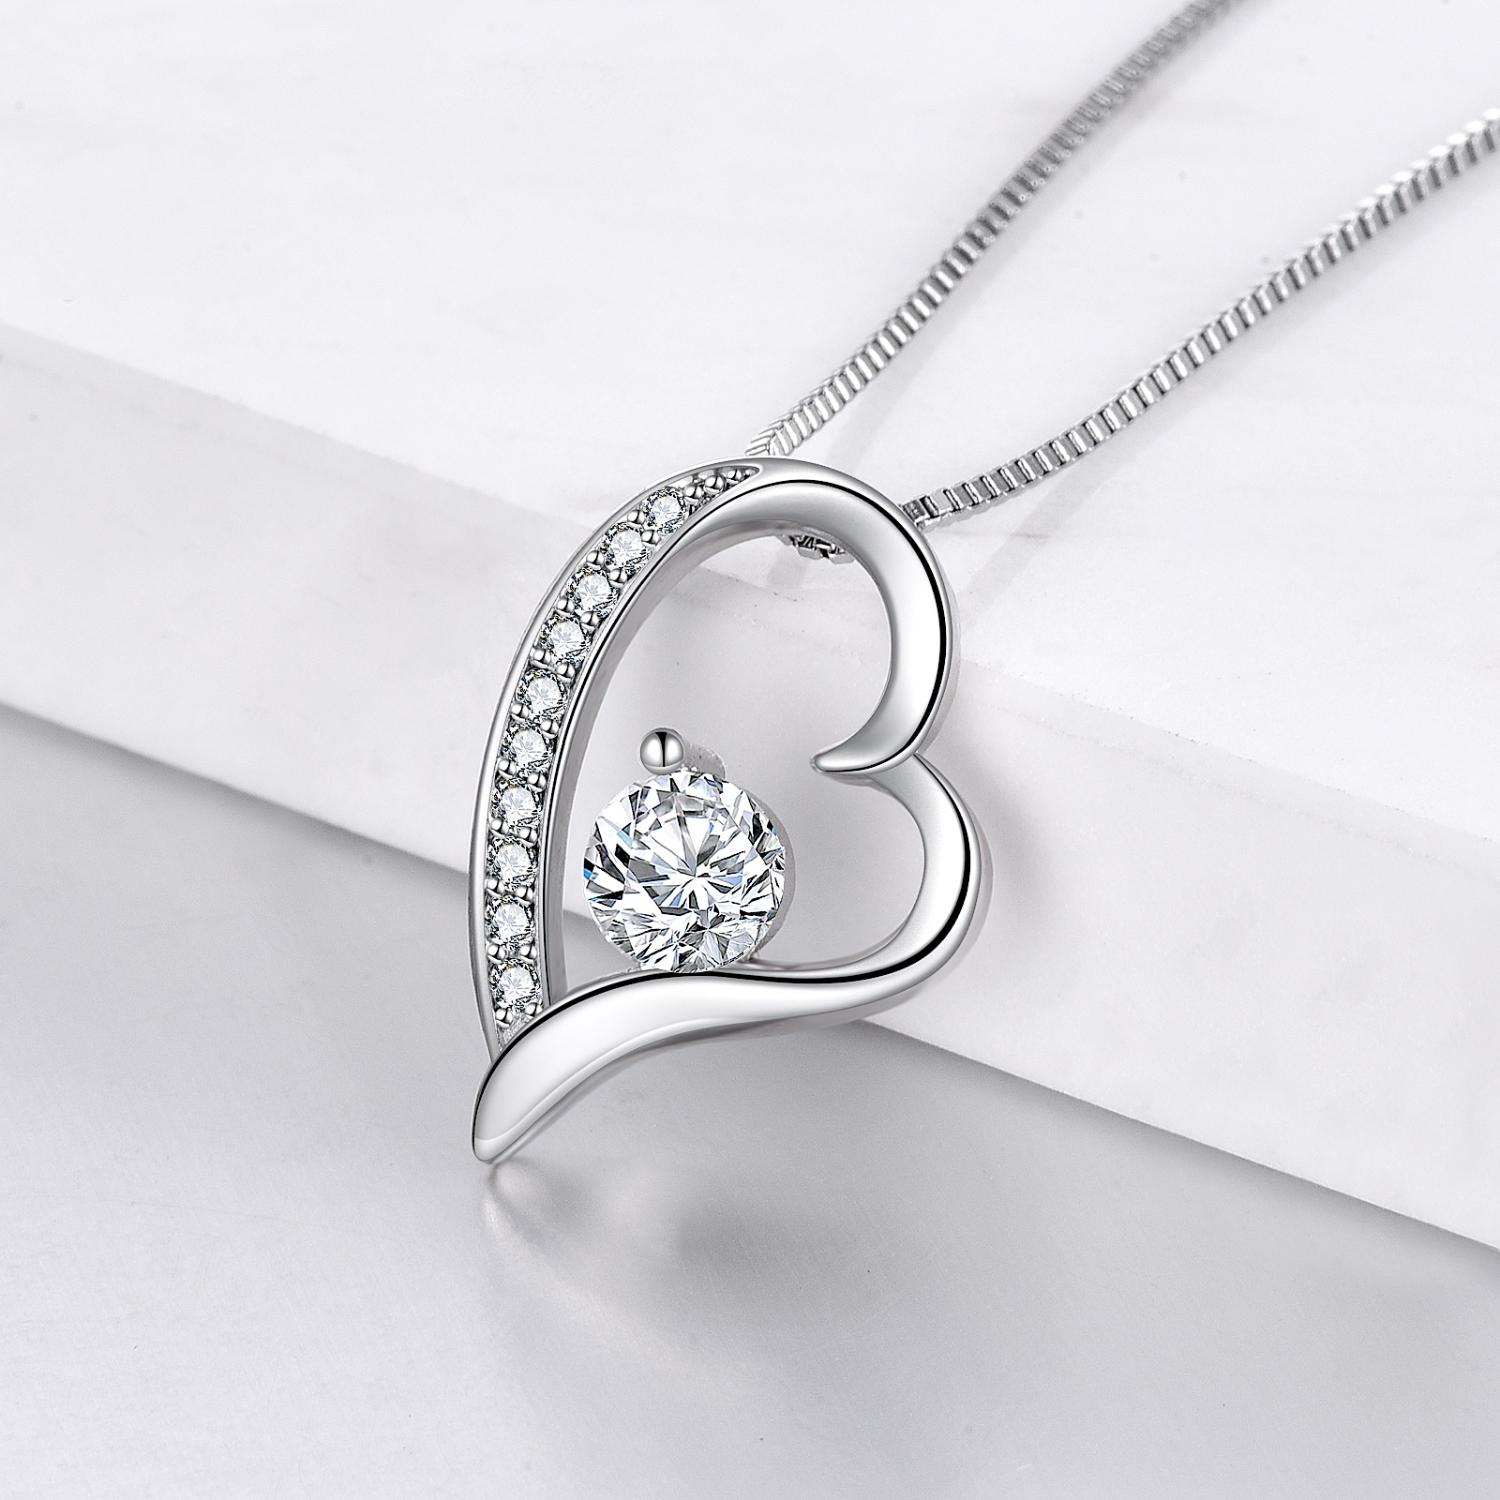 Heart Necklaces for Women Girlfriend Valentines Day Birthday Women Jewelry Gifts - Mardonyx Jewelry